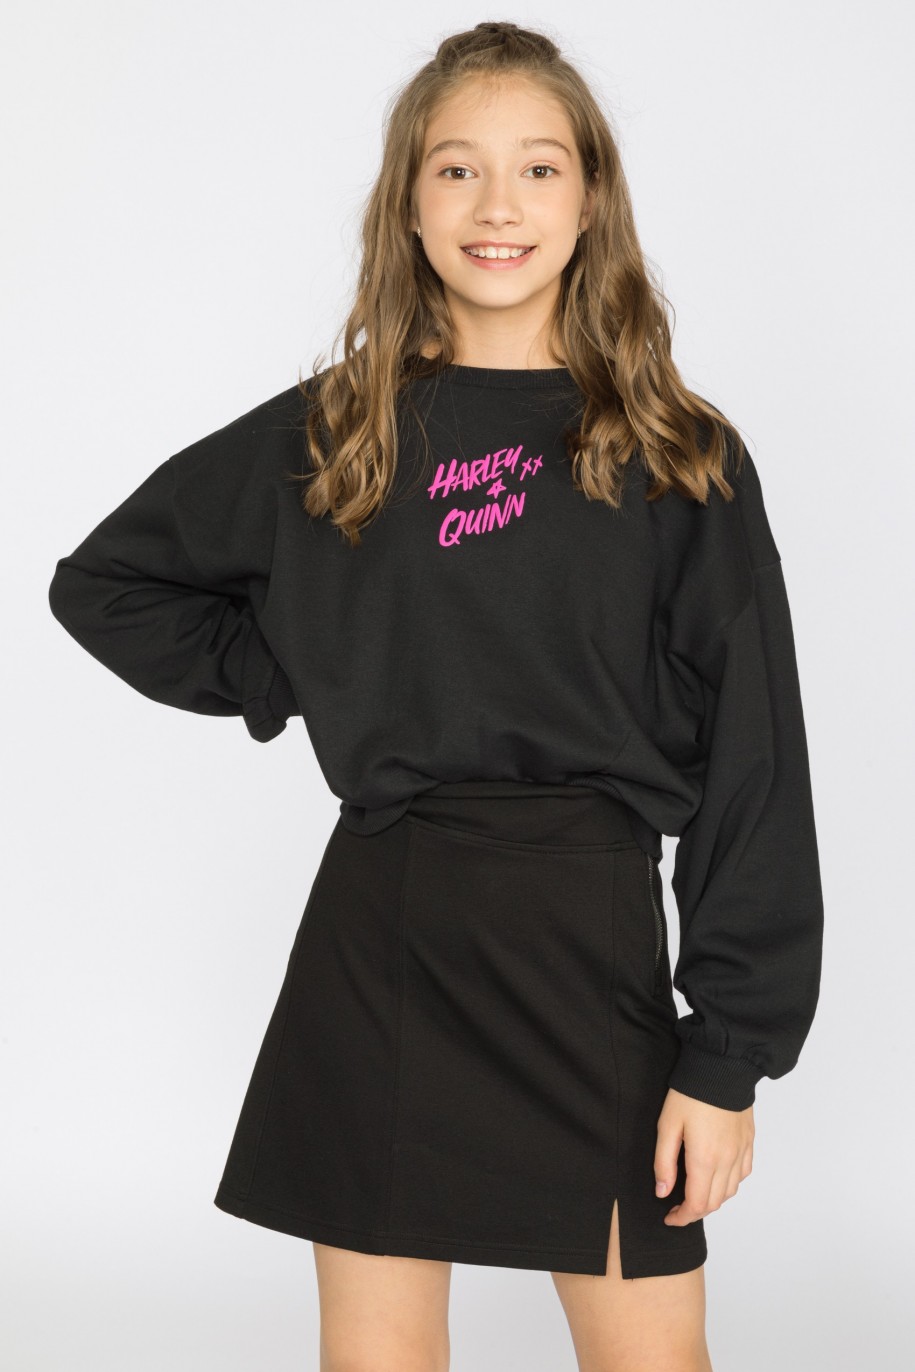 czarna bluza dla dziewczyny harley quinn reporter young